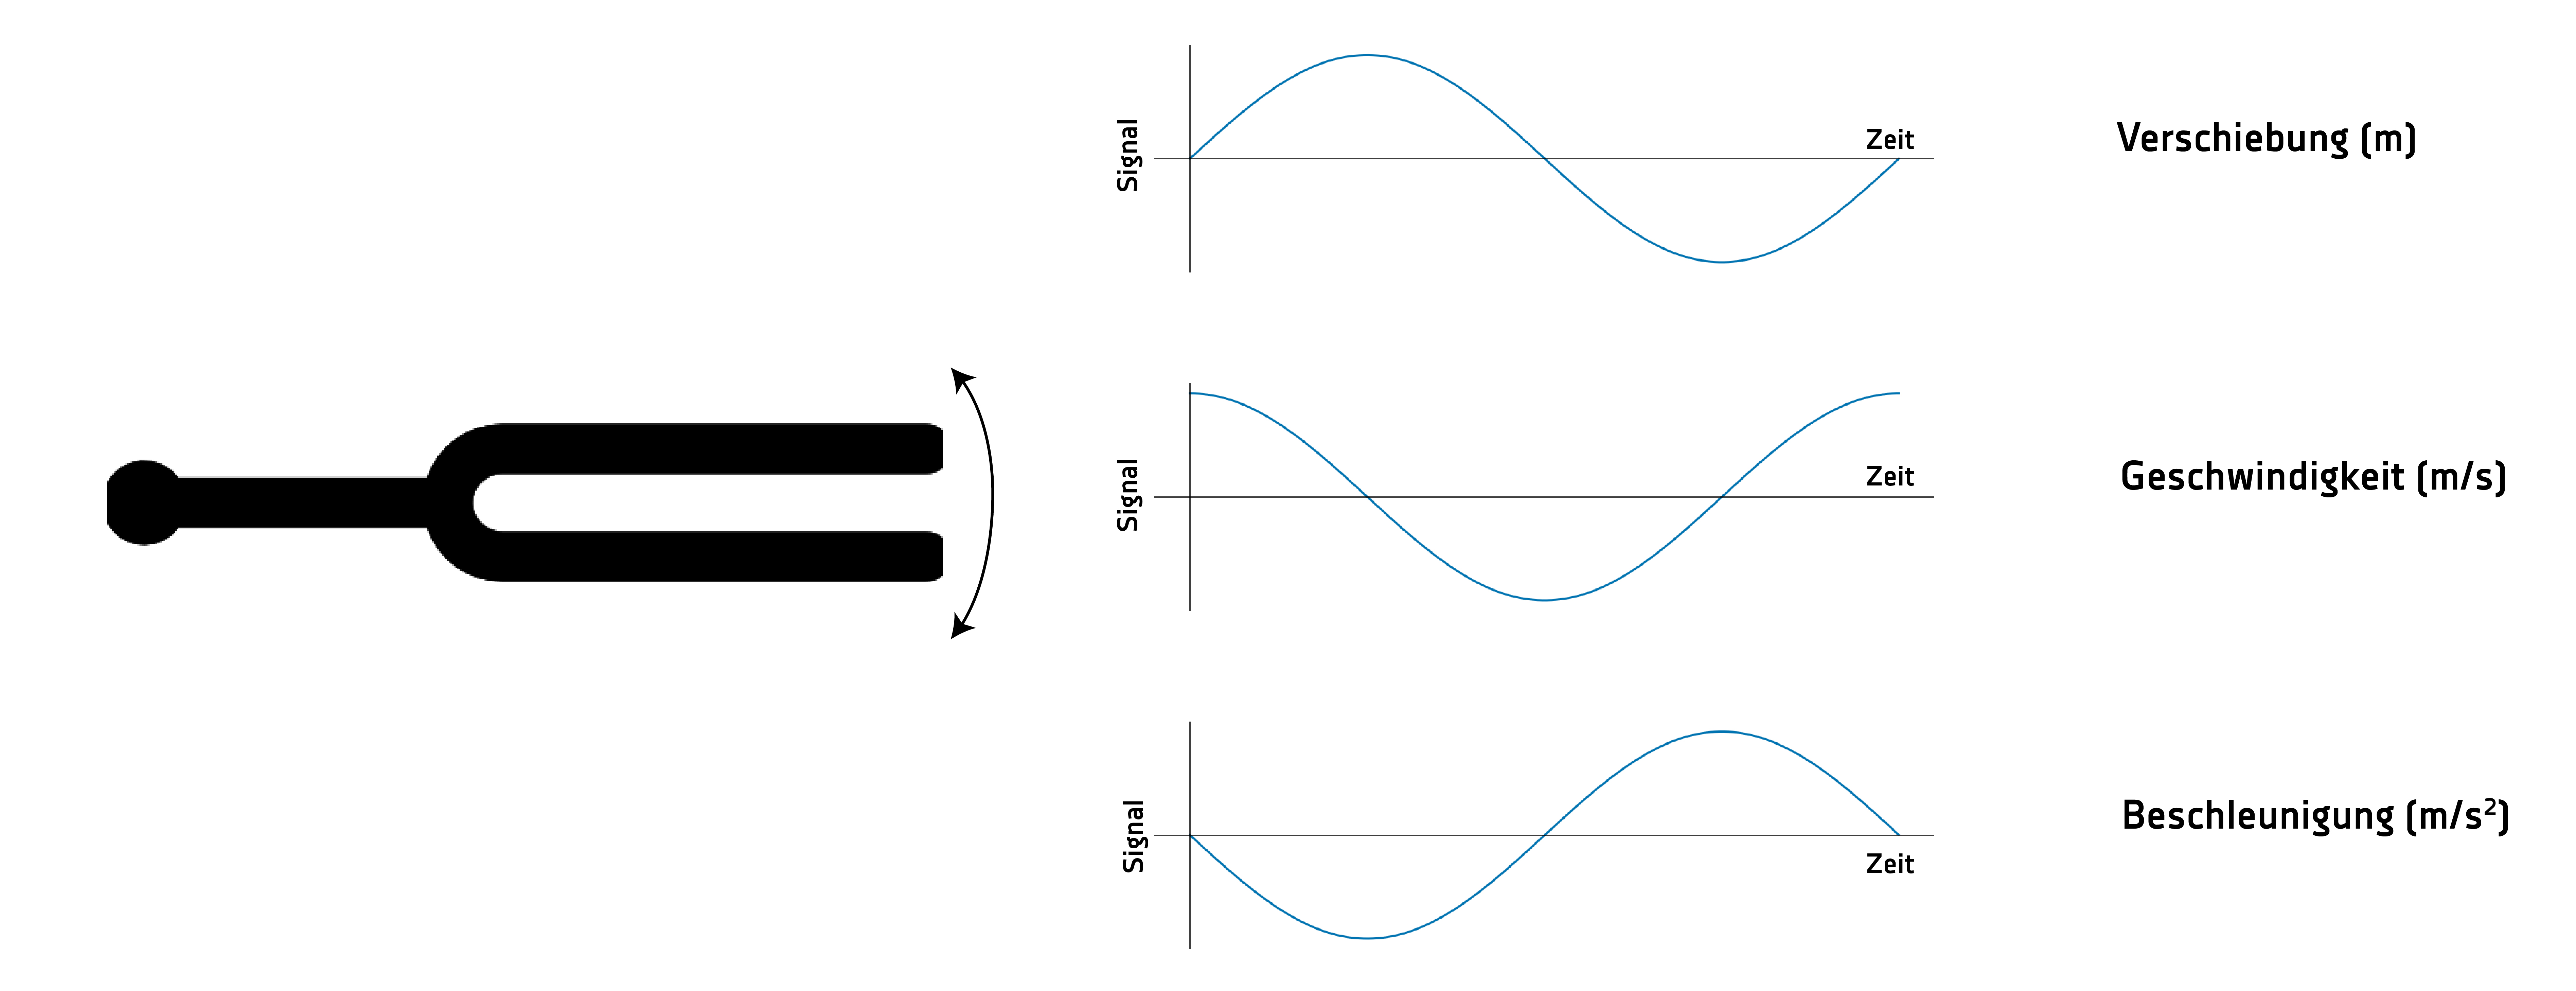 Vibrationssignal - Verhältnis der Komponenten über die Zeit